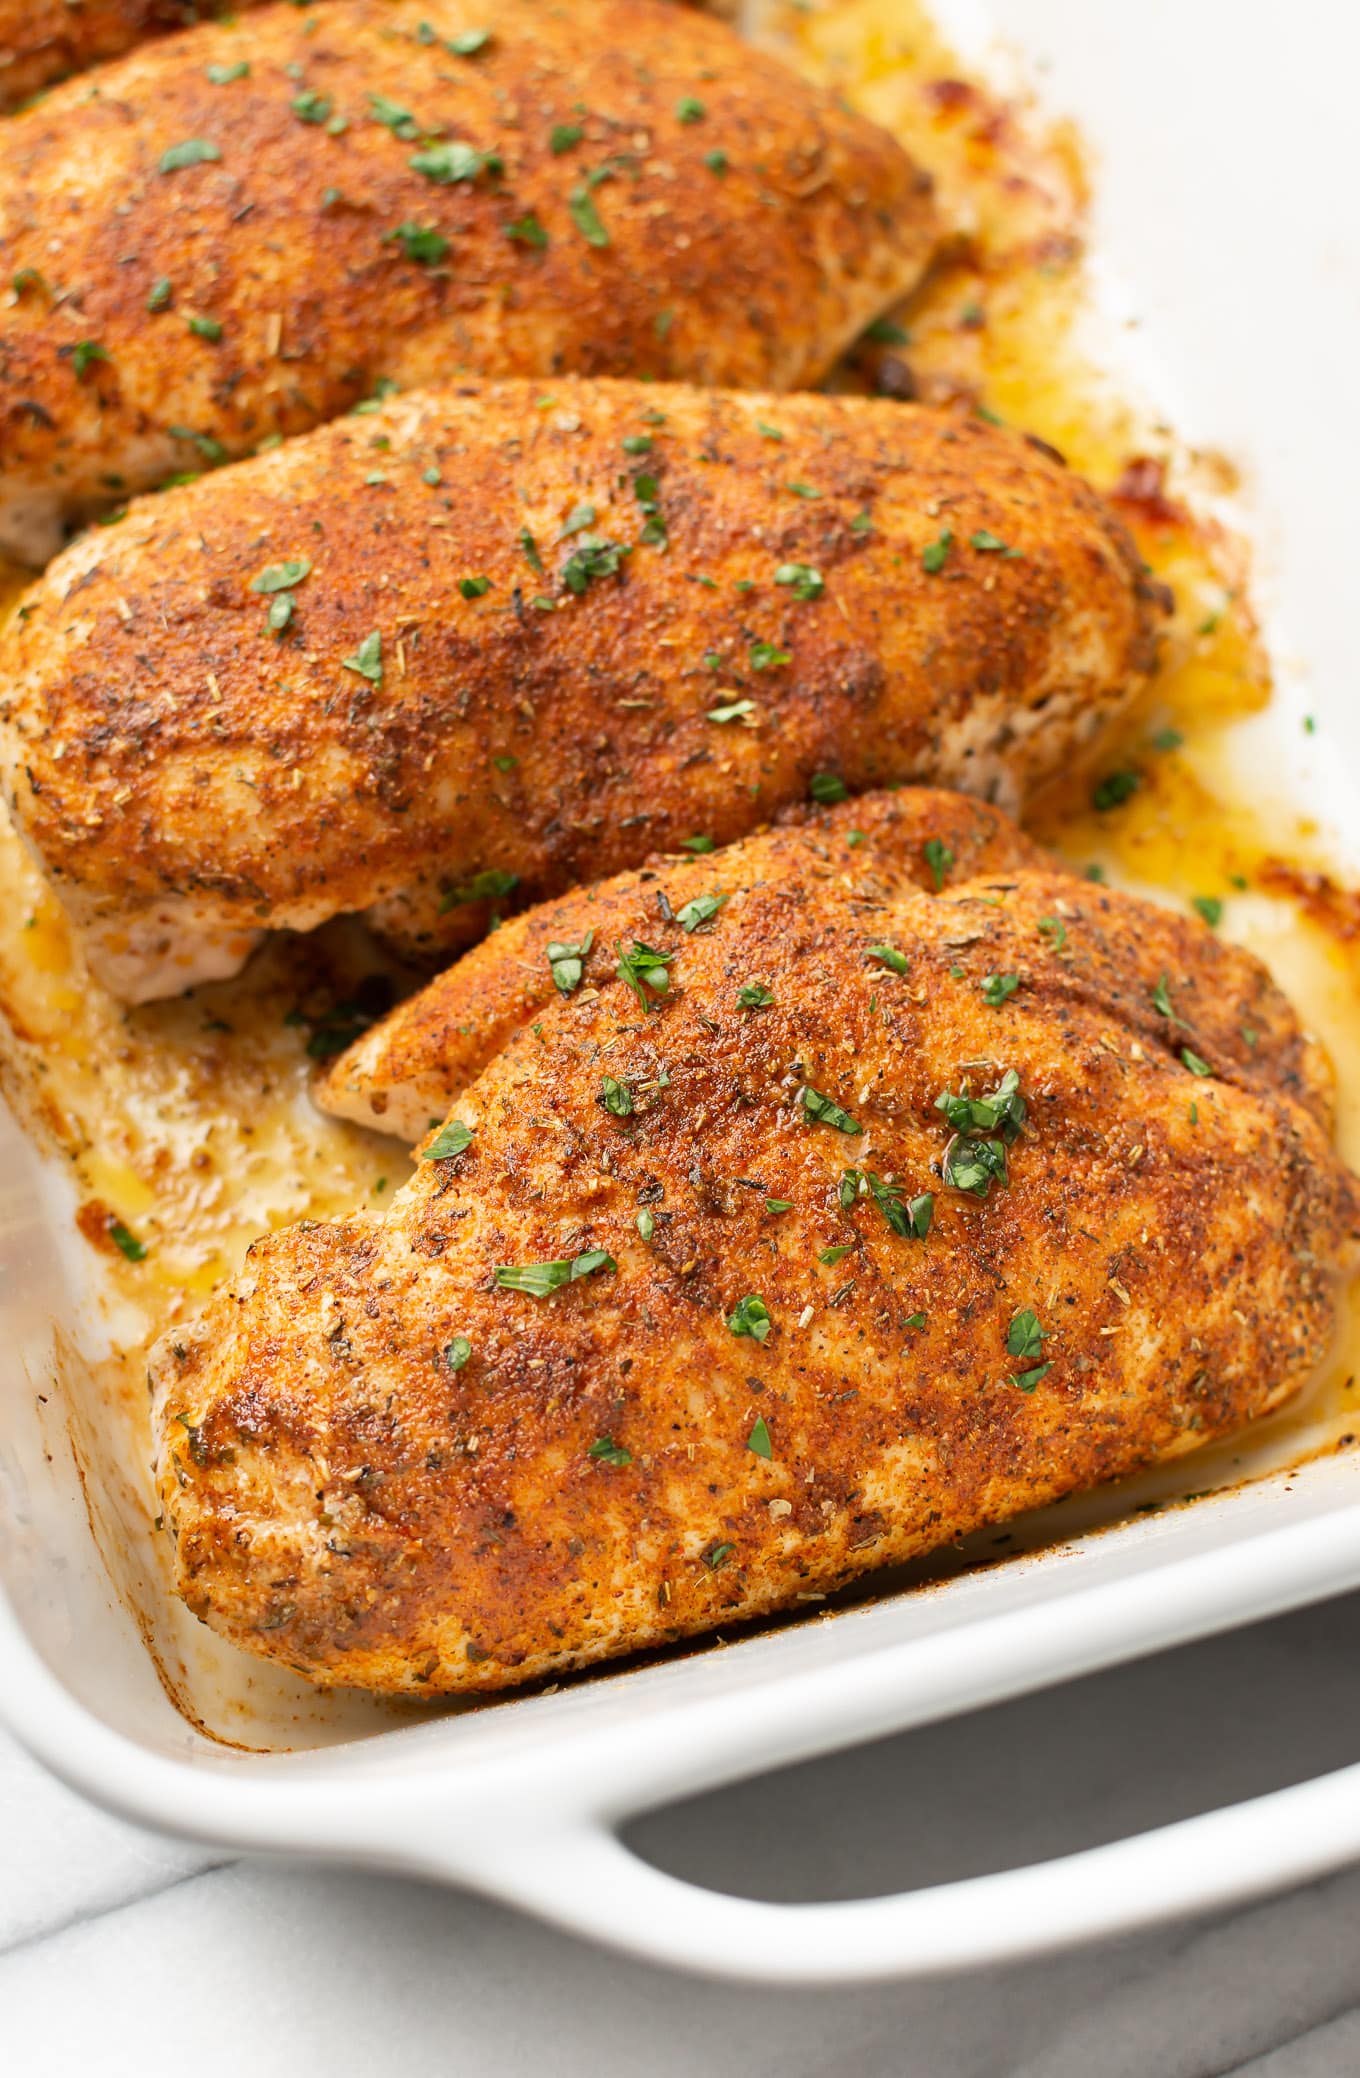 roasted chicken dinner ideas